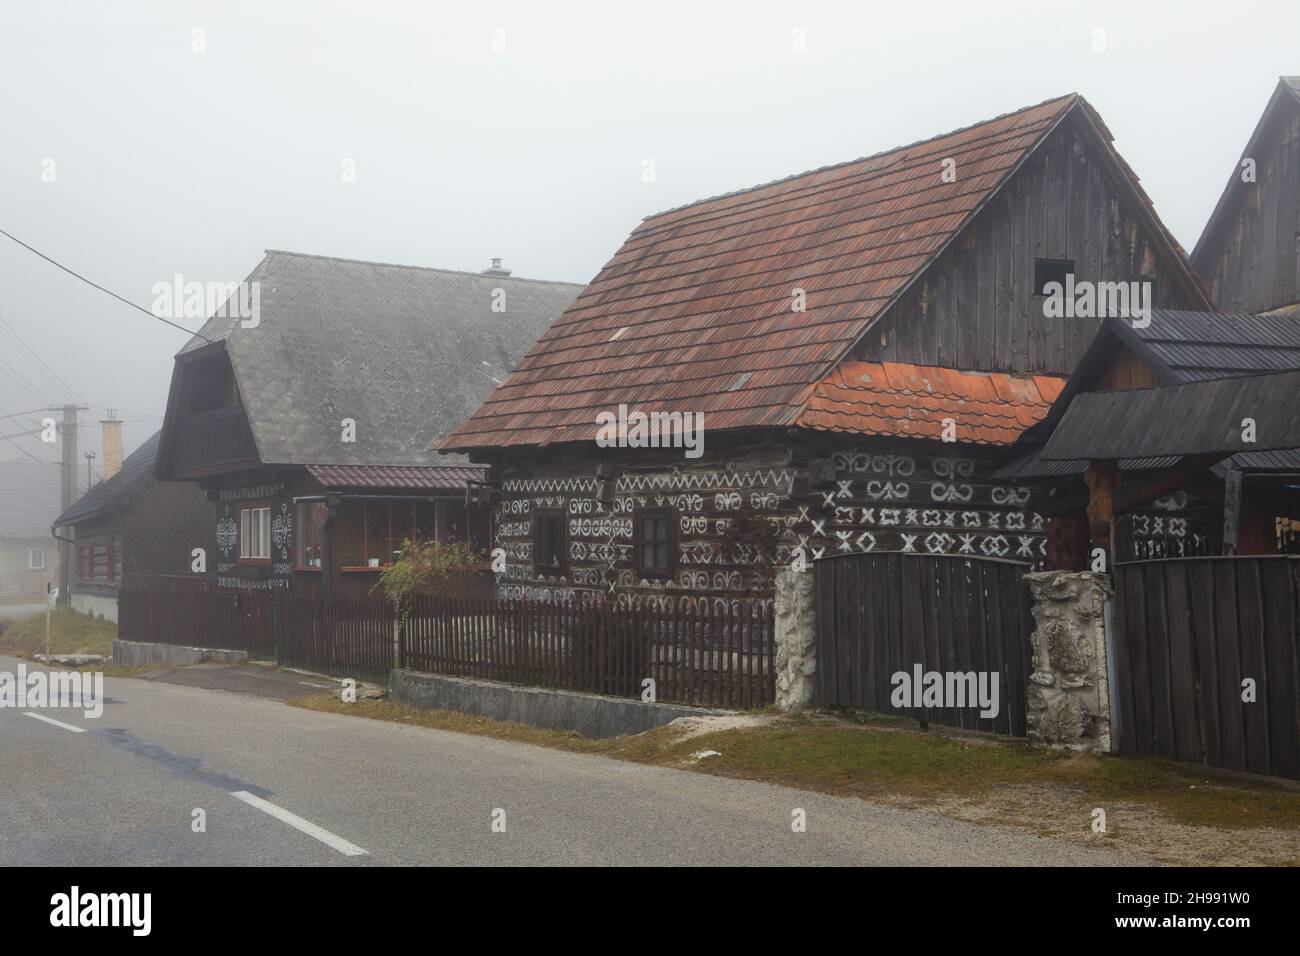 Maisons traditionnelles en rondins décorées de motifs linéaires blancs dans le village de Čičmany dans la région de Žilina en Slovaquie. Banque D'Images